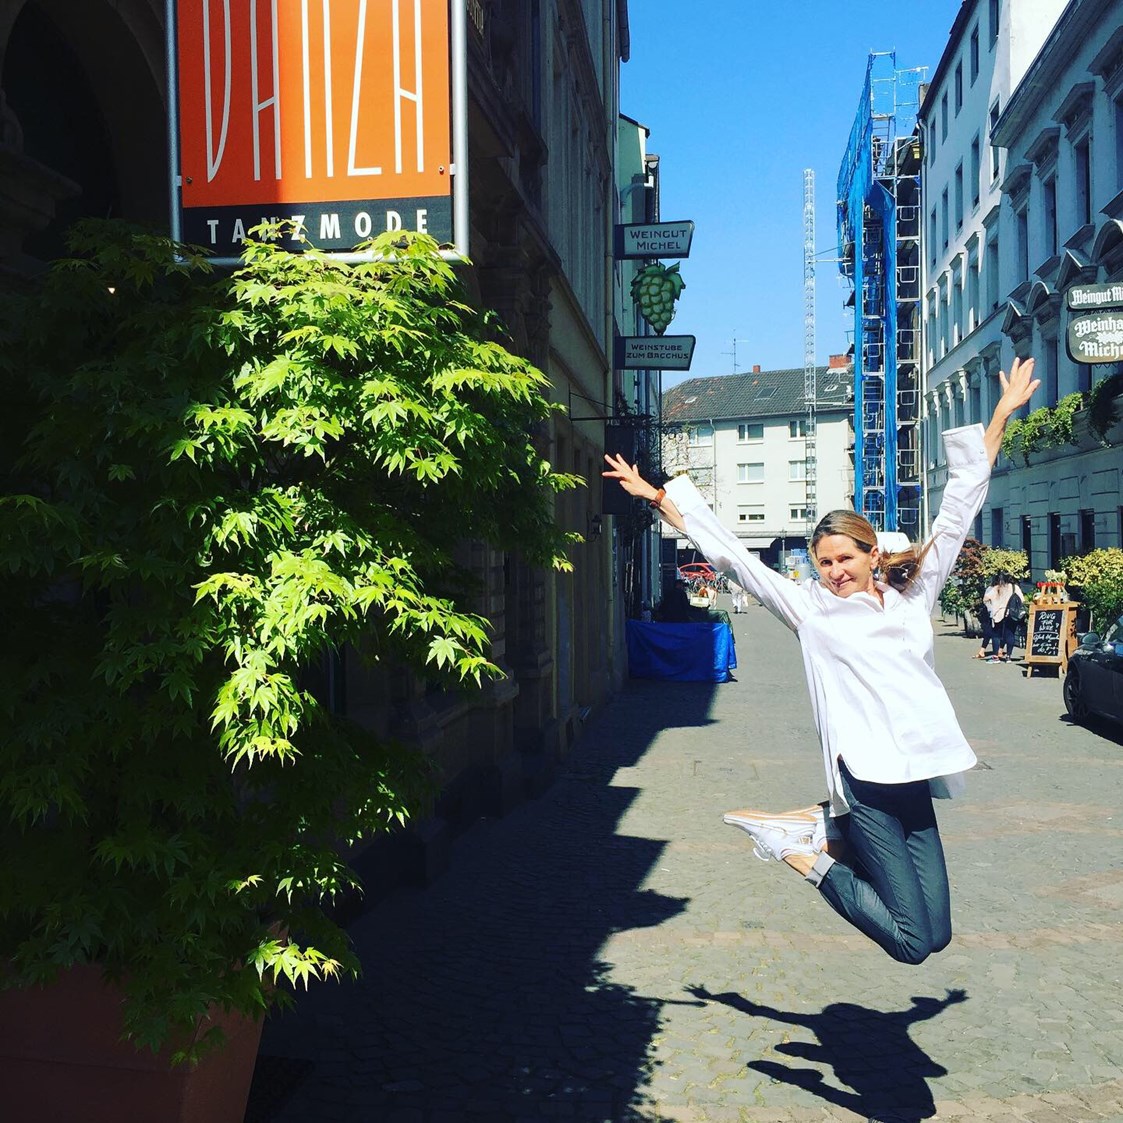 Einkaufen Mainz: La Danza Tanzmode 